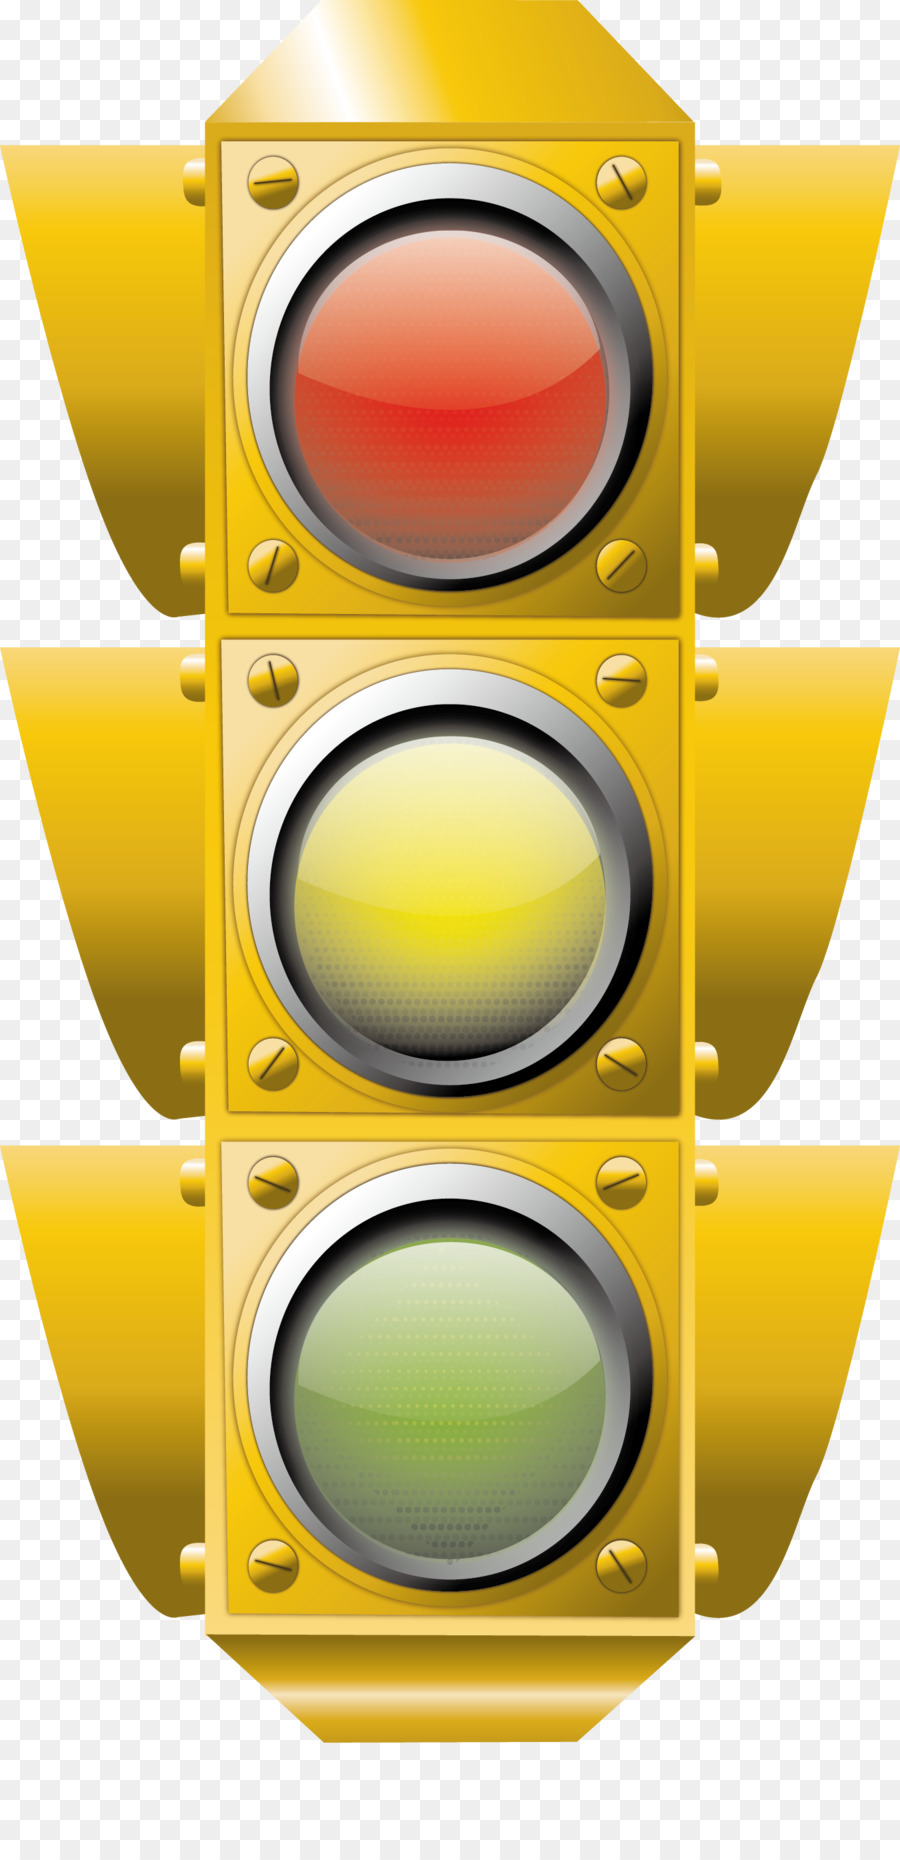 Đèn giao thông Clip nghệ thuật - Đèn giao thông véc tơ liệu